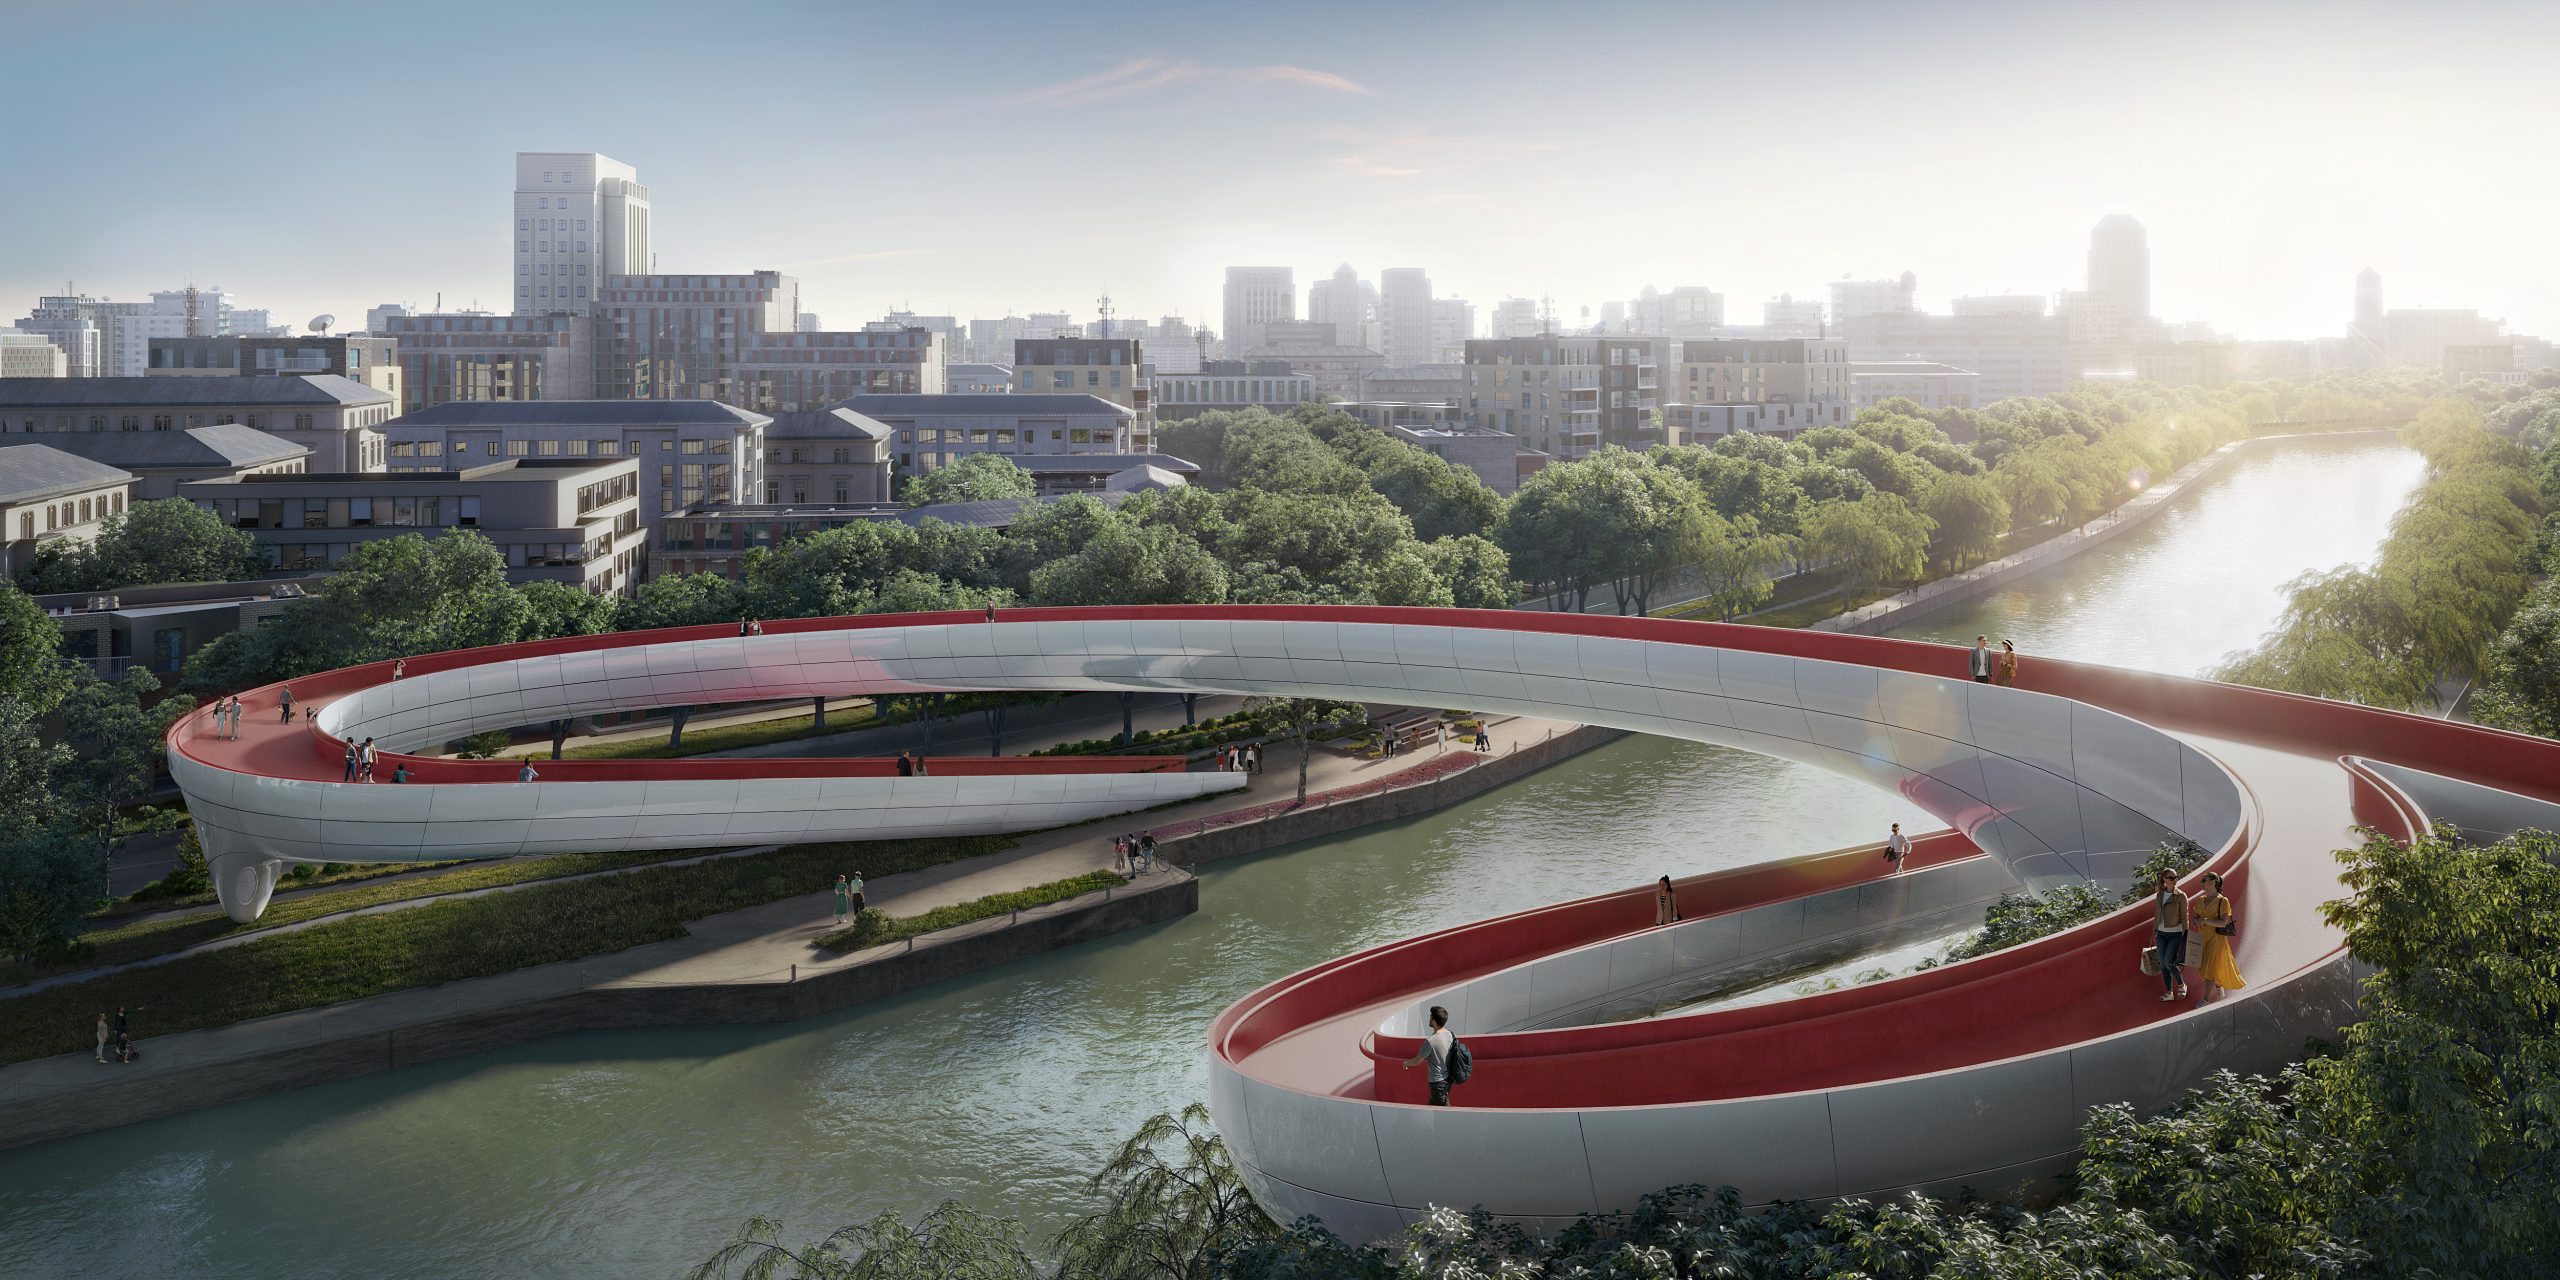 RMJM Milano's design for the pedestrian bridge project in China